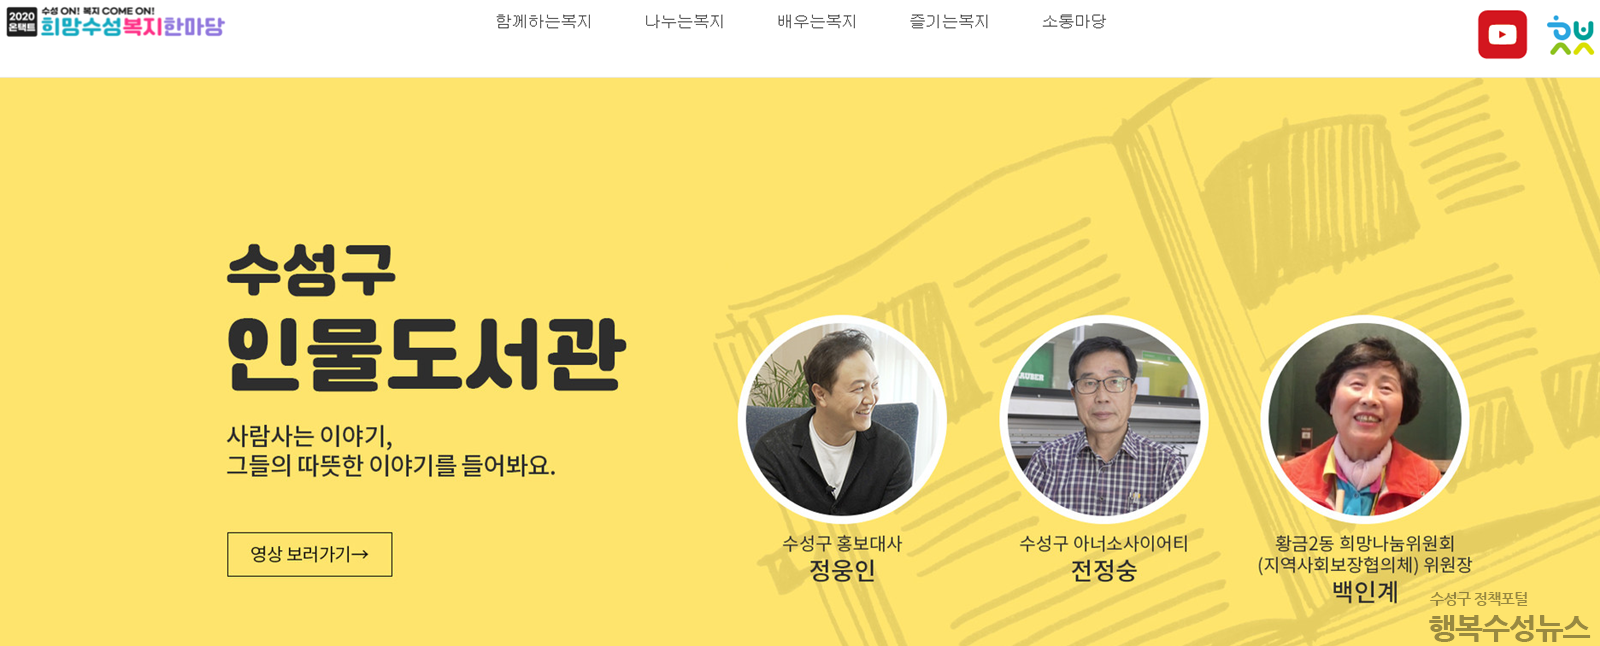 2020 온택트 희망수성복지한마당 공식홈페이지의 인물도서관 메인화면2